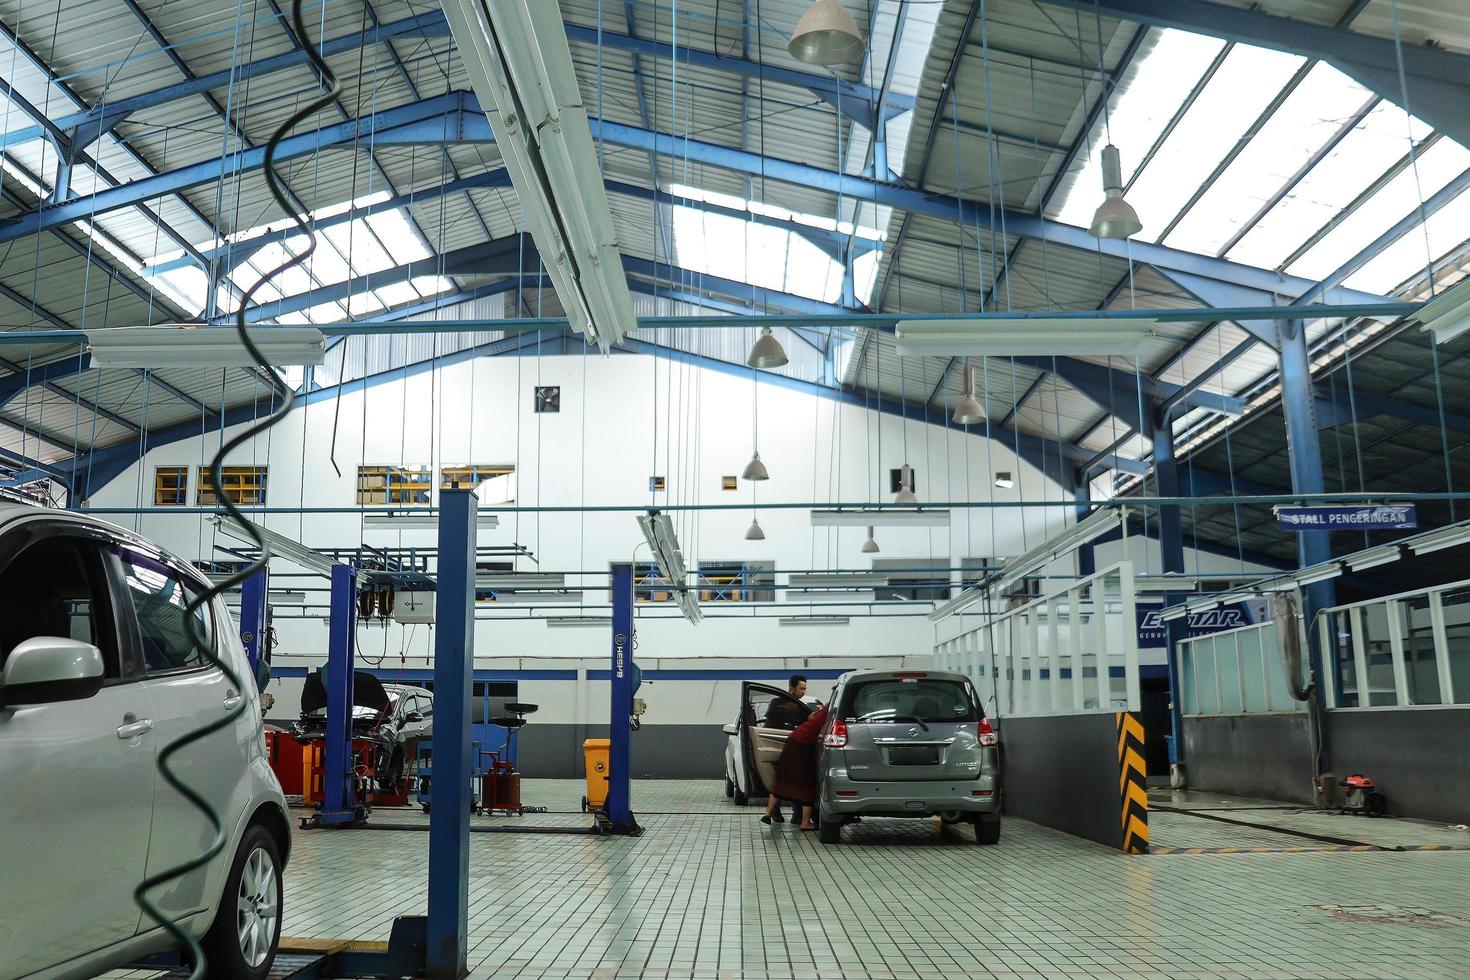 bandung, indonesien 19. januar 2022 autowerkstatt, autos auf servicestation gewartet foto